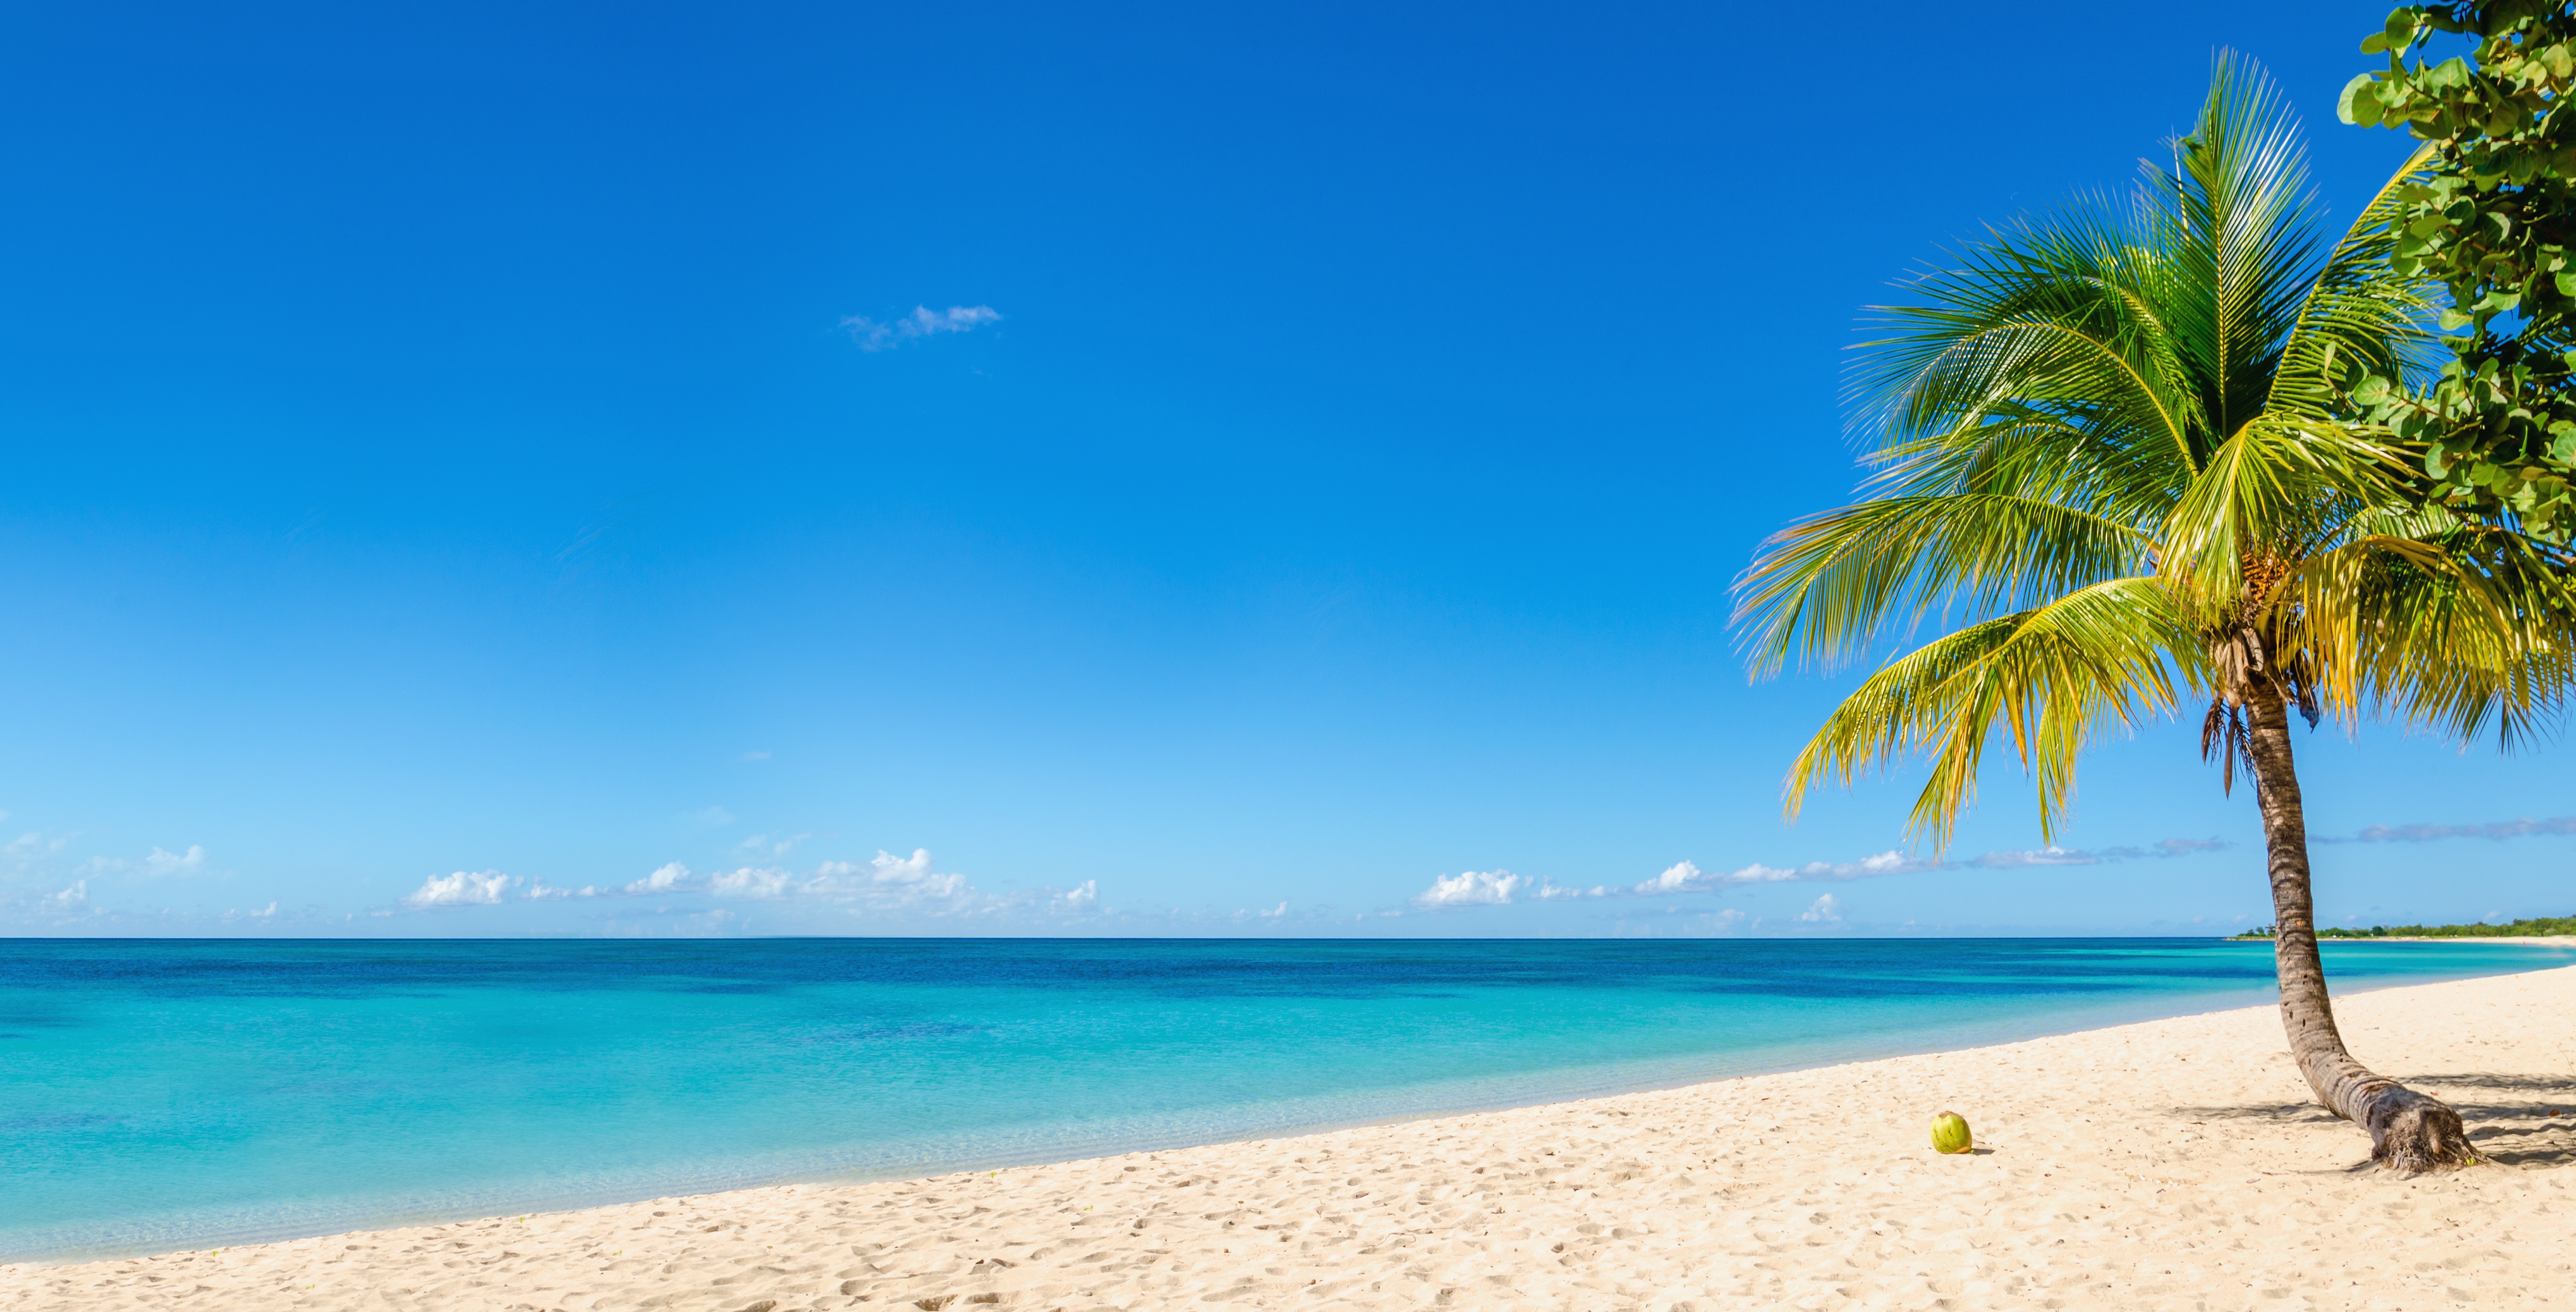 Sandy beach with coconut palm, Caribbean Island